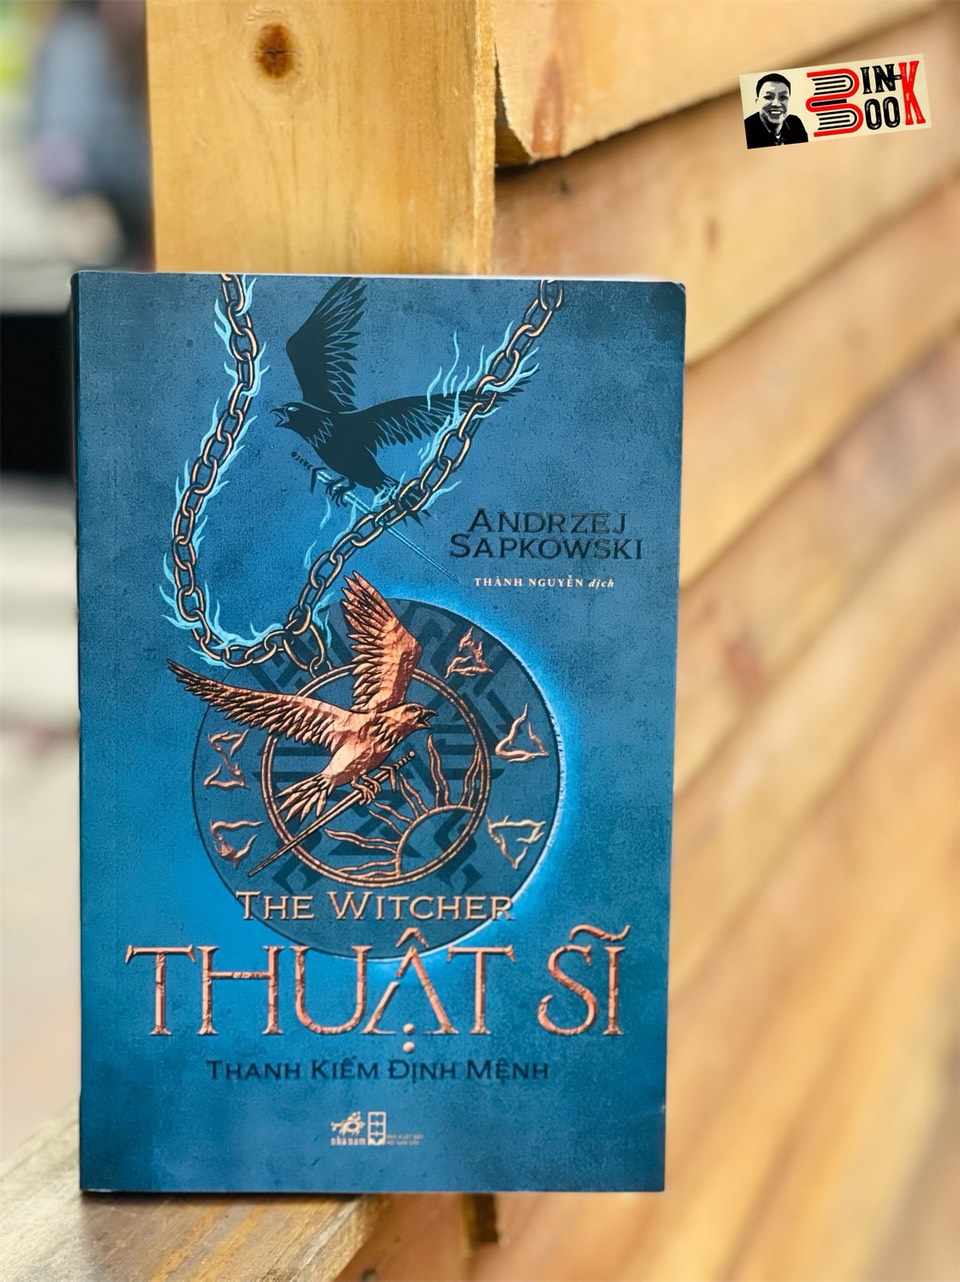 (THE WITCHER - THUẬT SĨ Tập 2) THANH K.IẾM ĐỊNH MỆNH - Andrzej Sapkowski - Thành Nguyễn dịch – Nhã Nam – bìa mềm